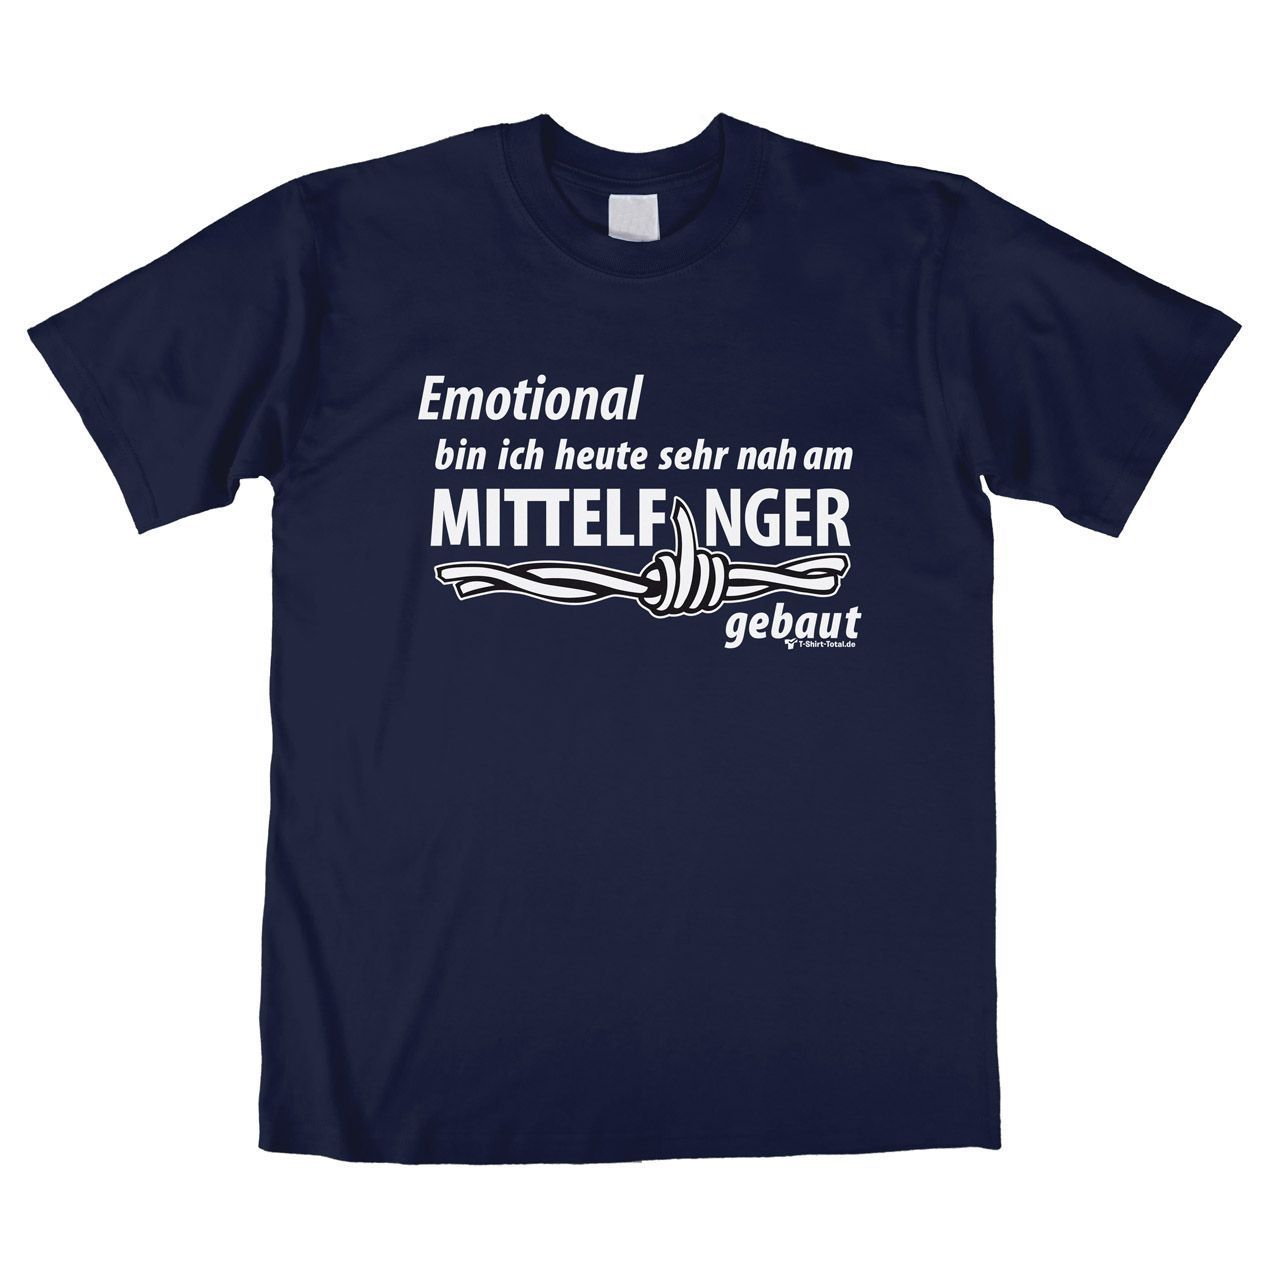 Mittelfinger Unisex T-Shirt navy Extra Large